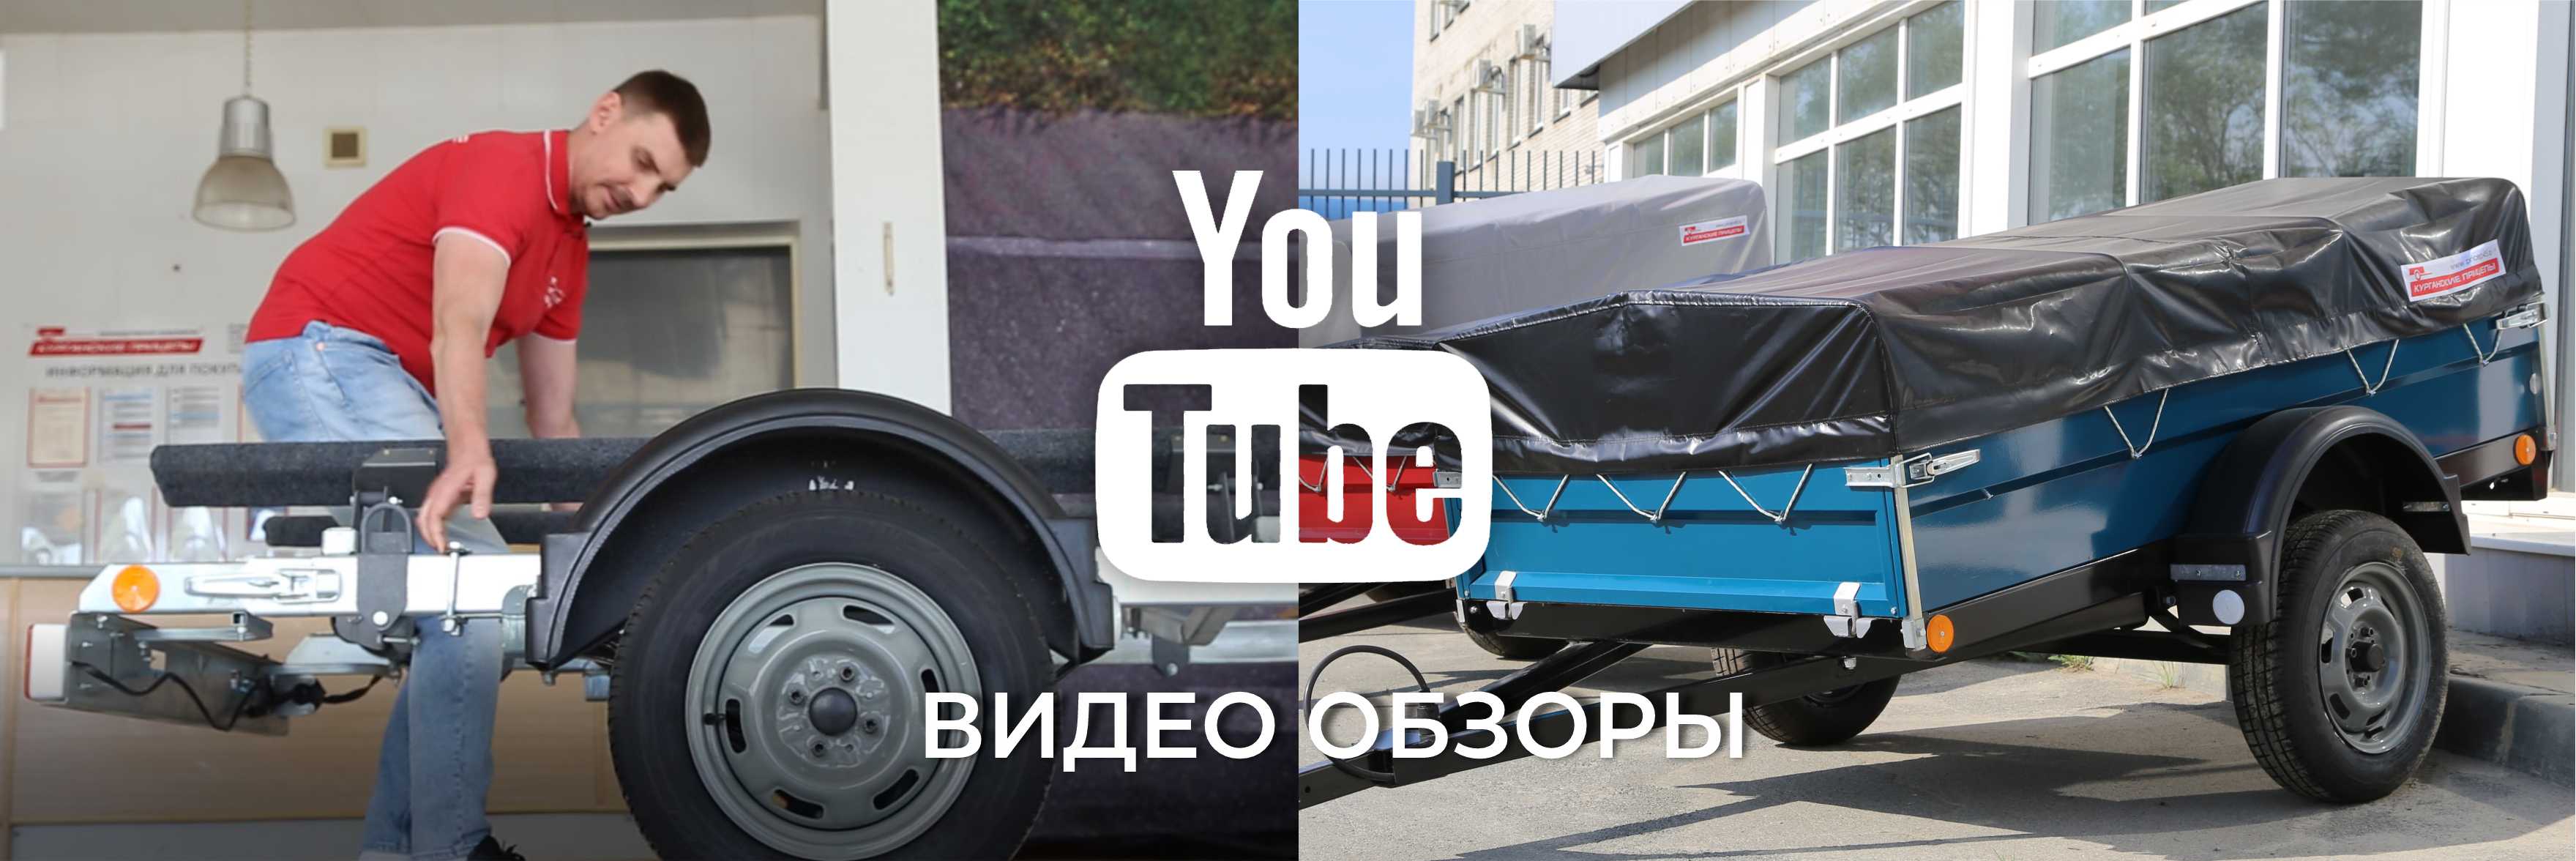 pricep16.ru YouTube: новые видео обзоры прицепов